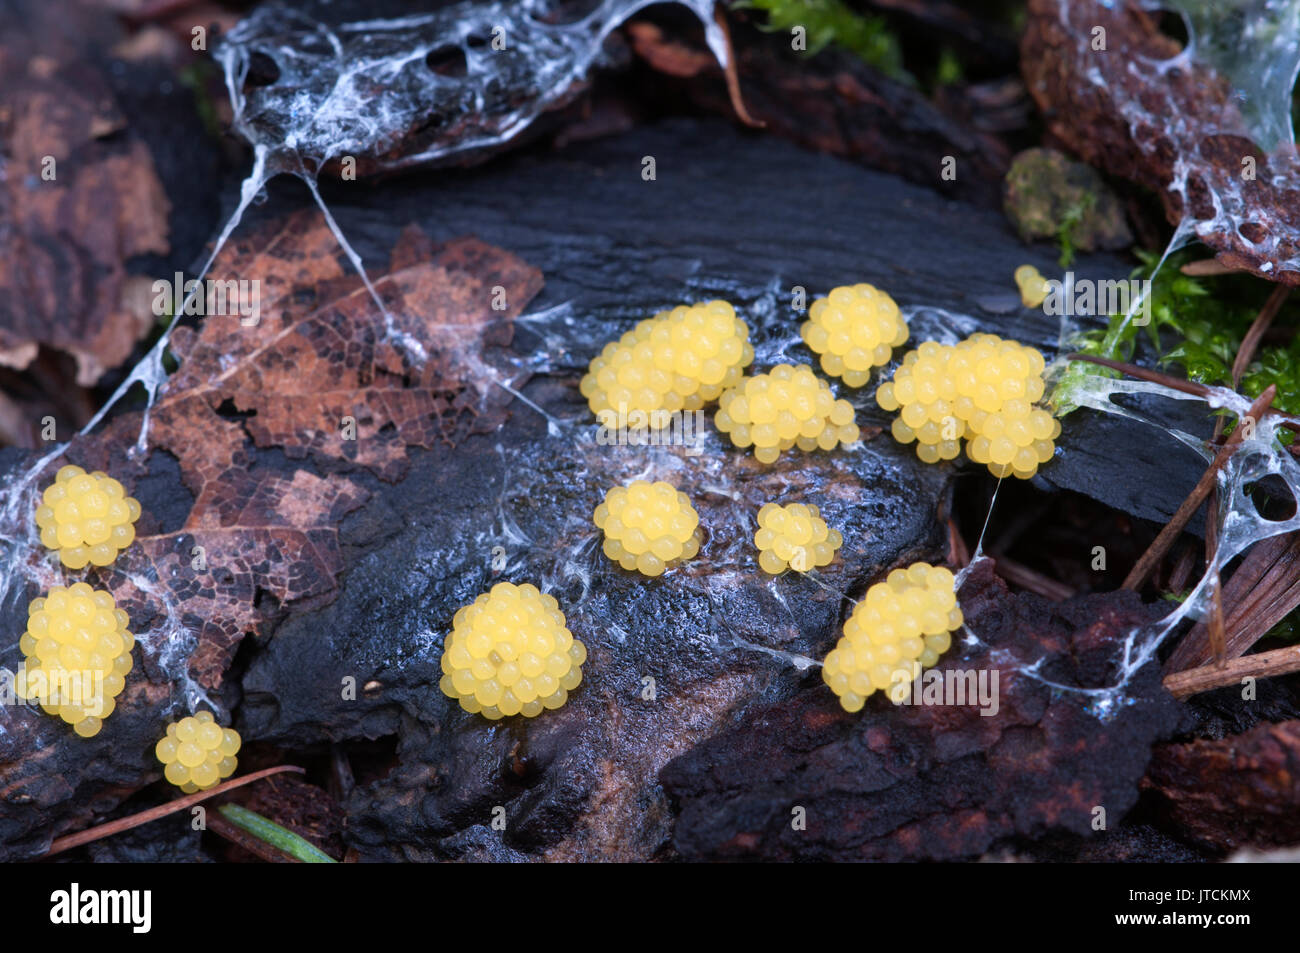 Ceratiomyxa fruticulosa mushrooms on an old stump Stock Photo